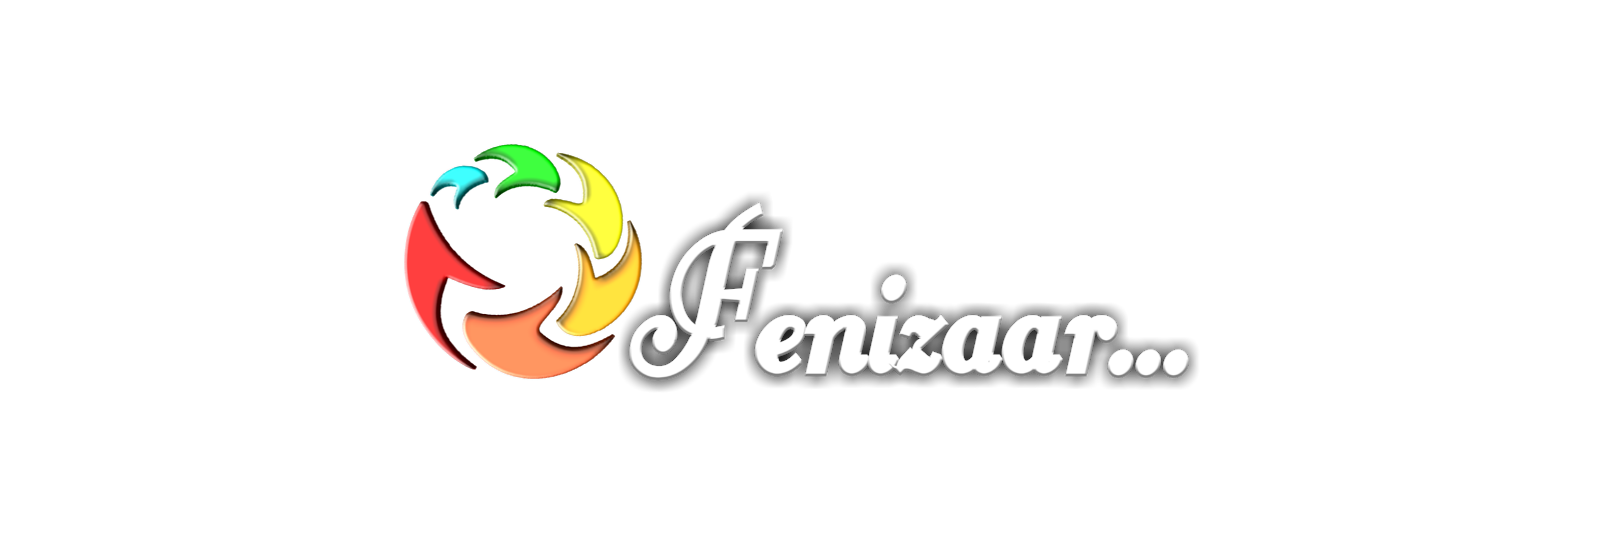 Welcome to Fenizaar!